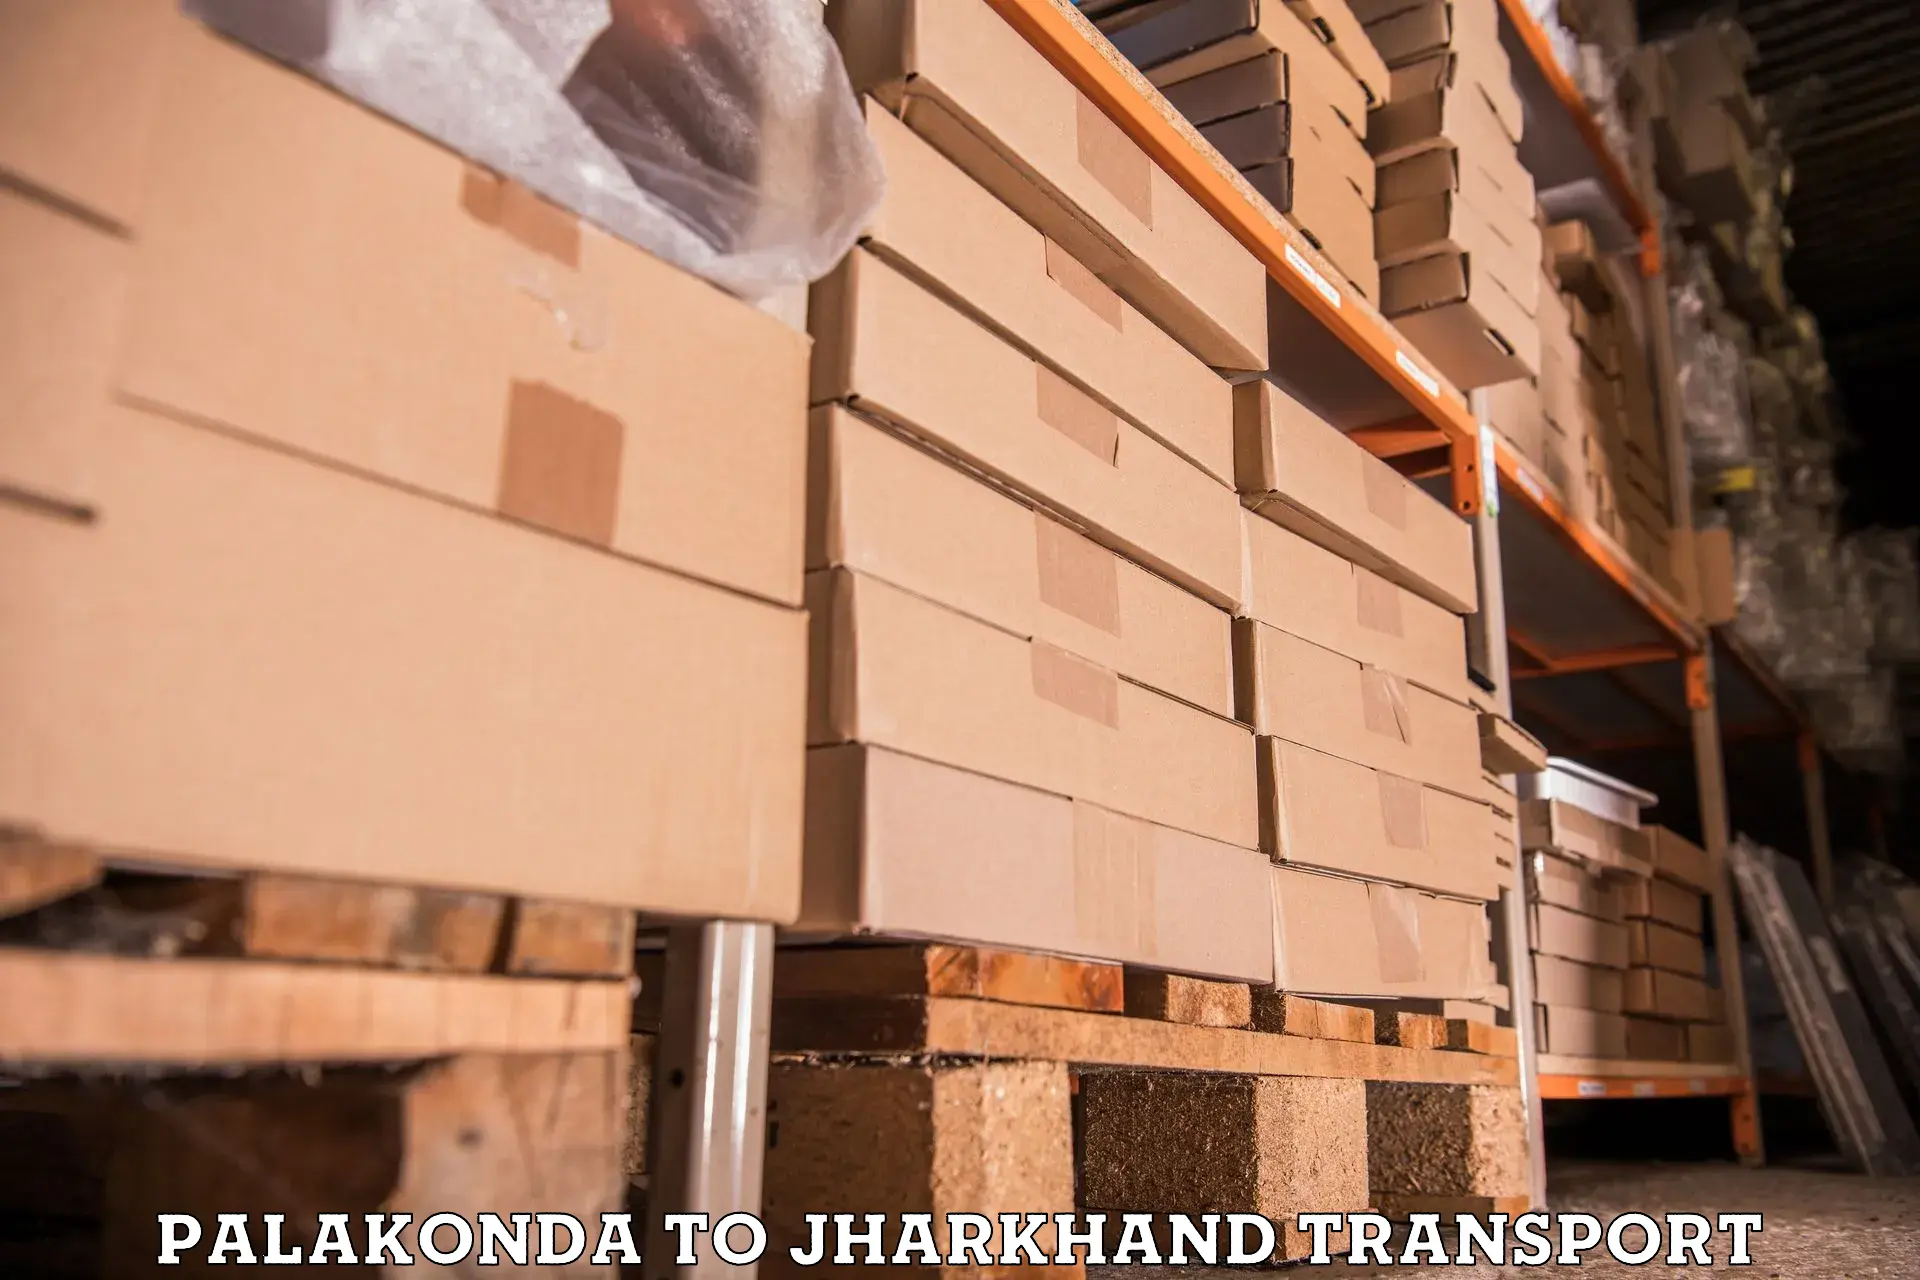 Furniture transport service Palakonda to Shikaripara